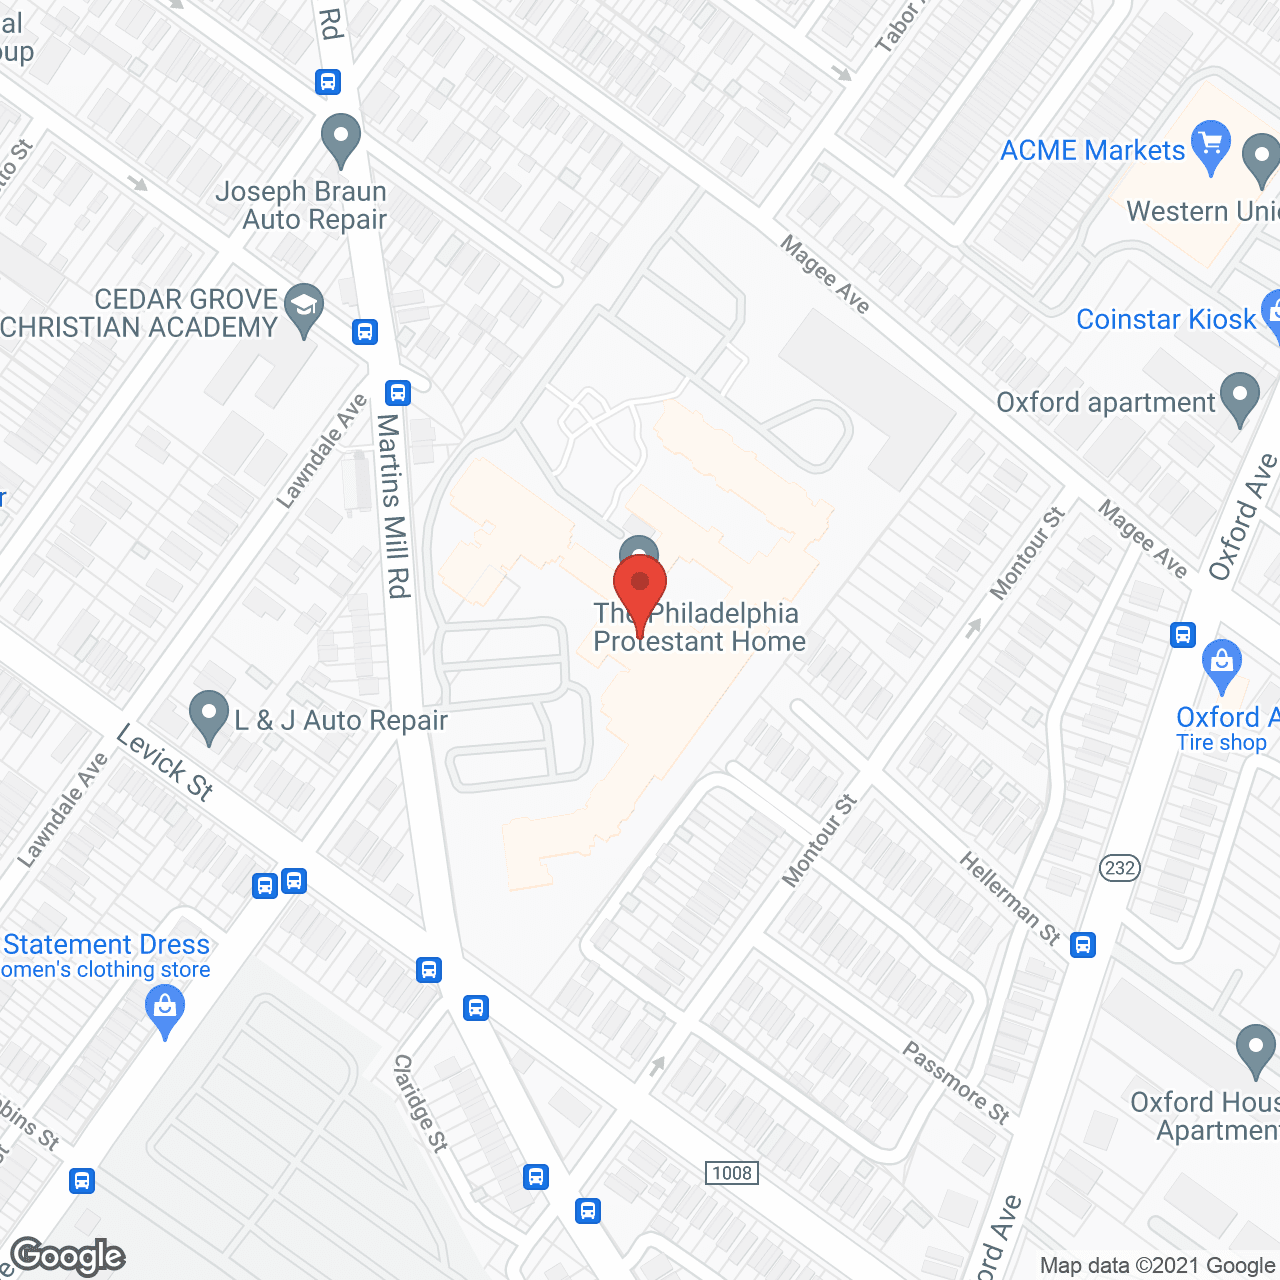 The Philadelphia Protestant Home in google map